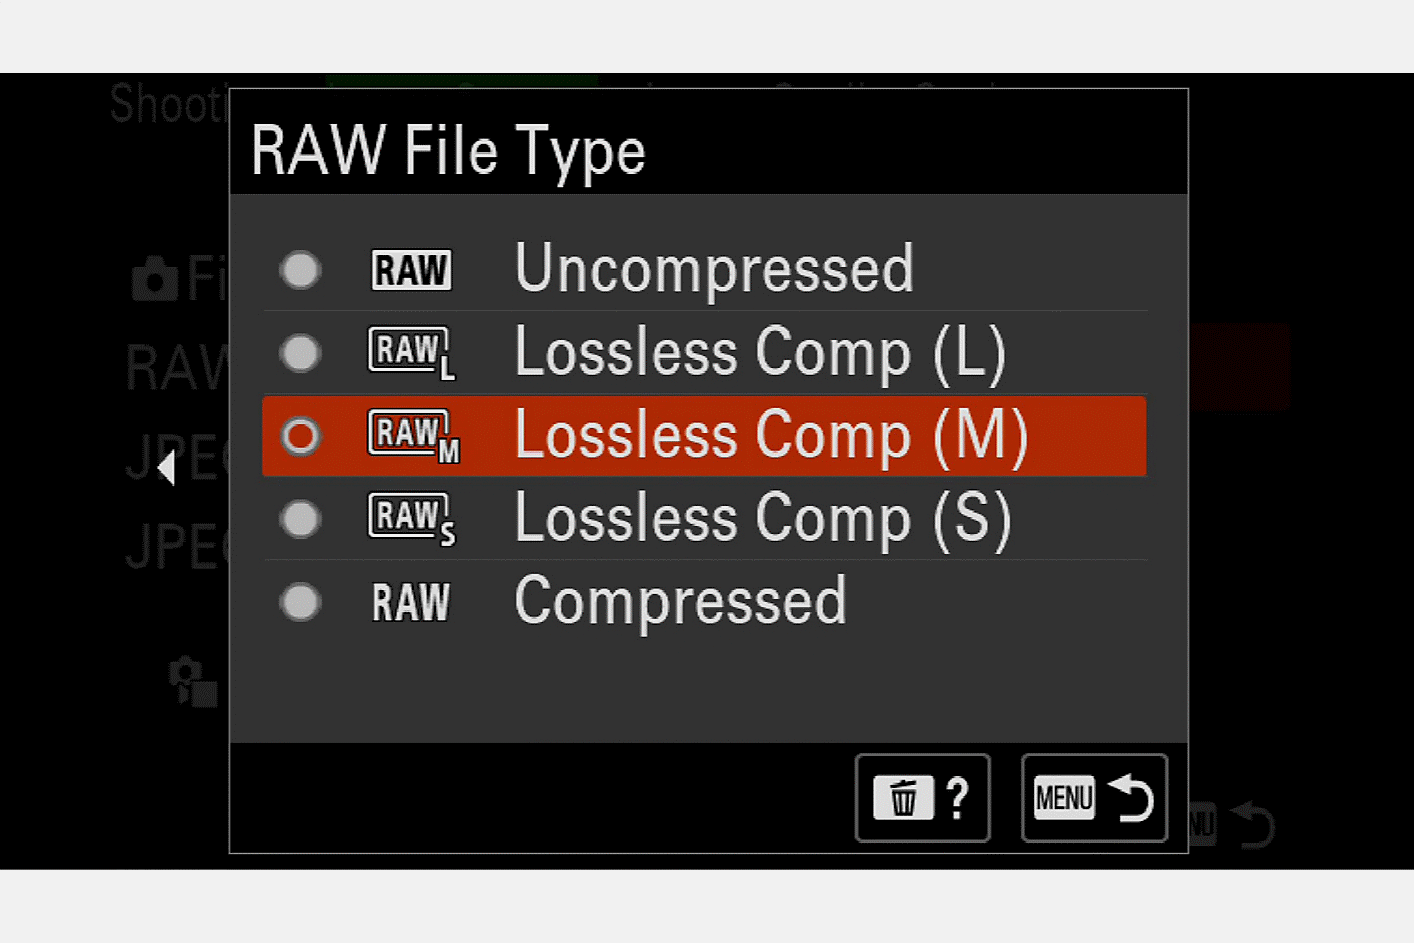 Bilde av kameraskjermen for valg av RAW-filtype